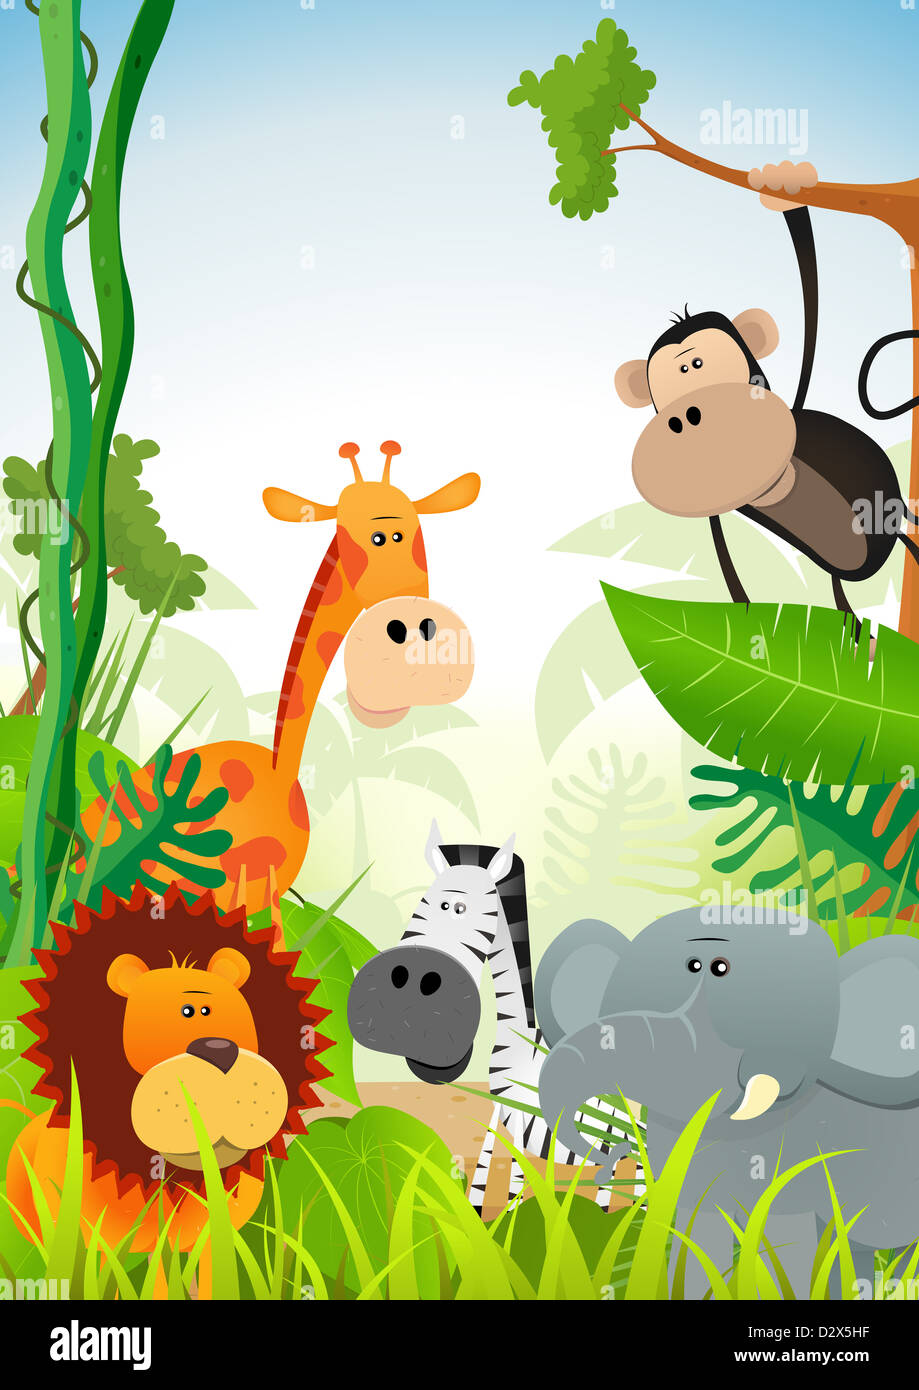 Illustration de cute cartoon animaux sauvages en provenance de savane africaine, y compris le lion, l'éléphant, la girafe, la gazelle, singe et zebra sur Banque D'Images